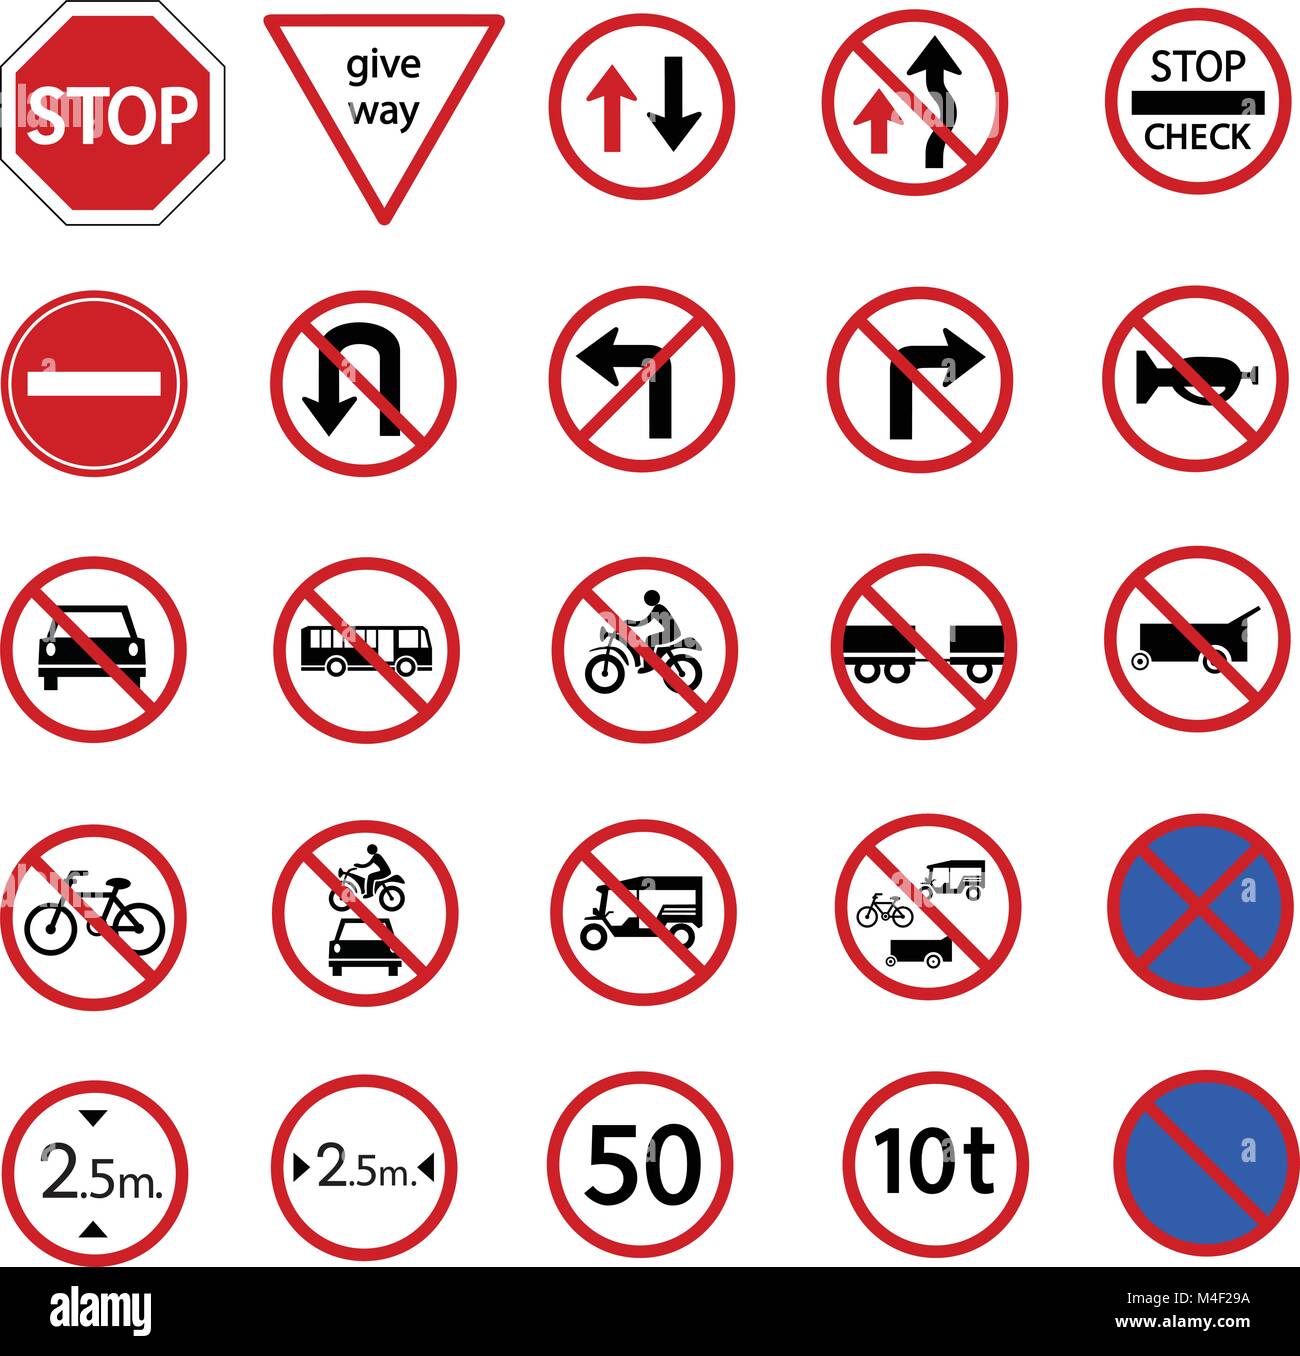 Interdiction de circulation pour inscription et de la sécurité routière sur le réchauffement street sign, vector icon set Illustration de Vecteur